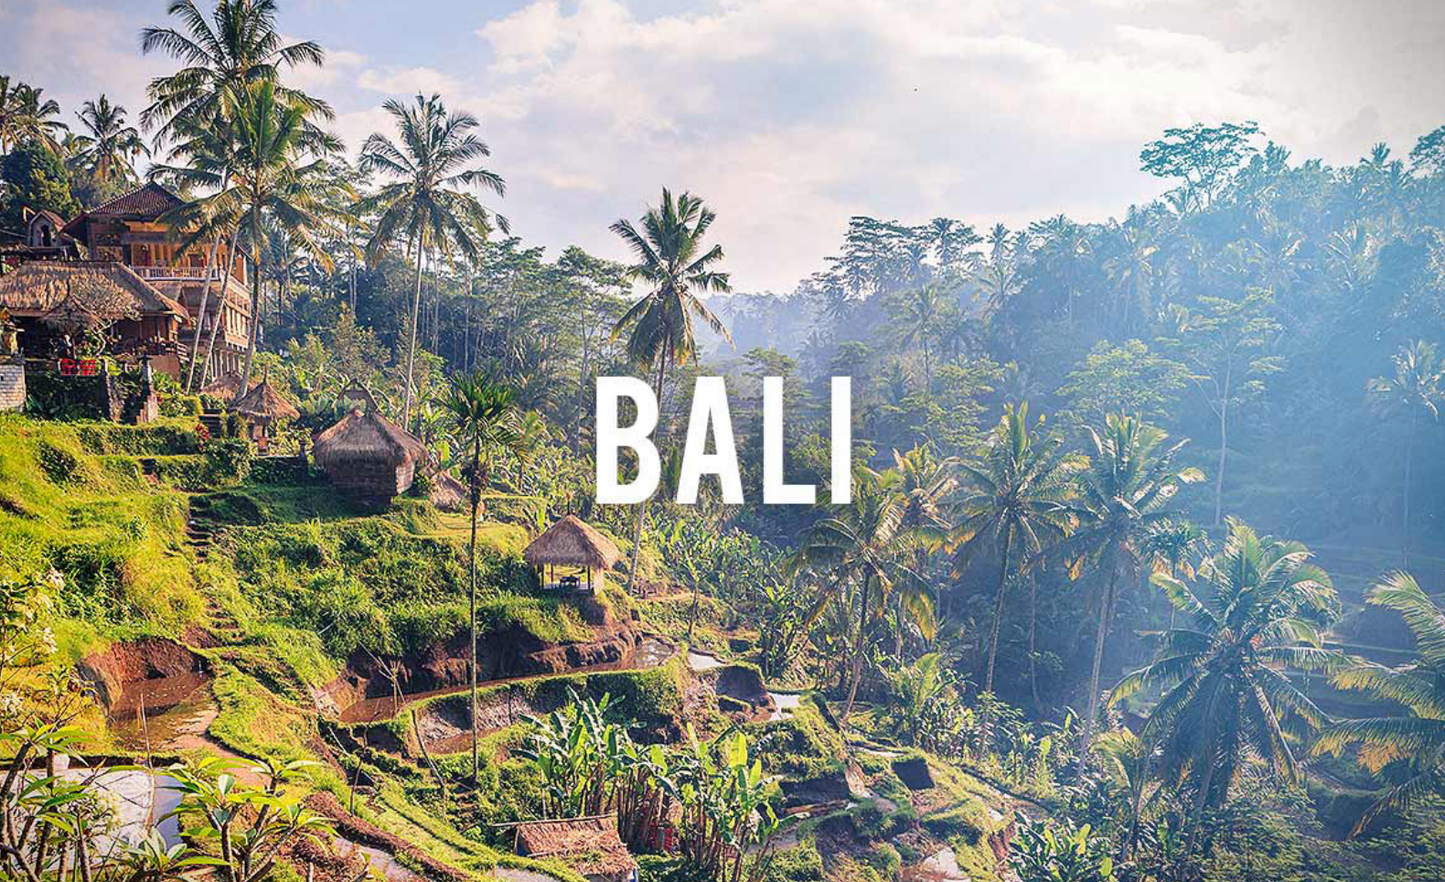 Bali B211 Visa